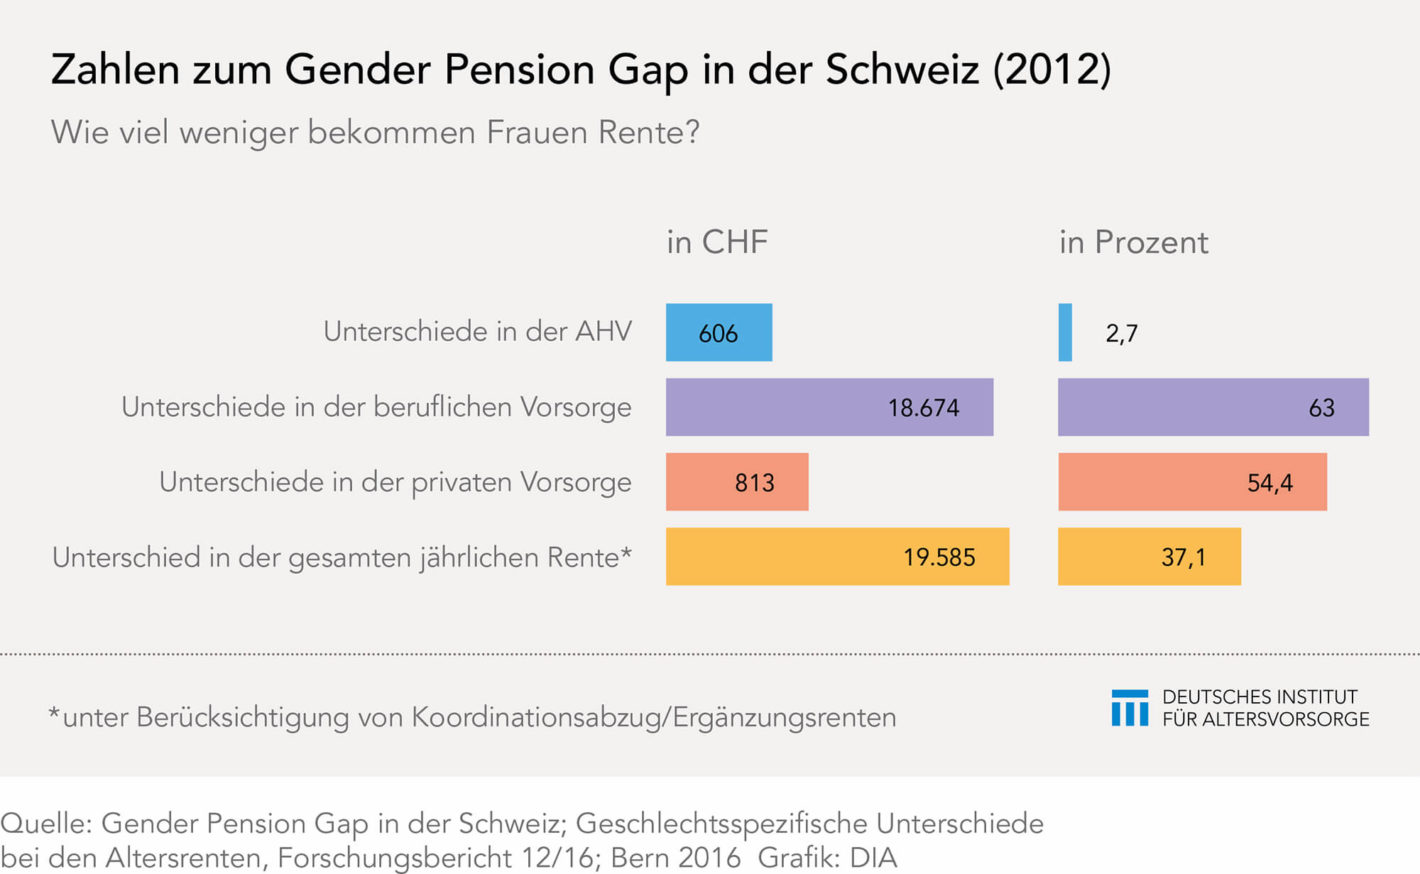 Der Gender Pension Gap in der Schweiz